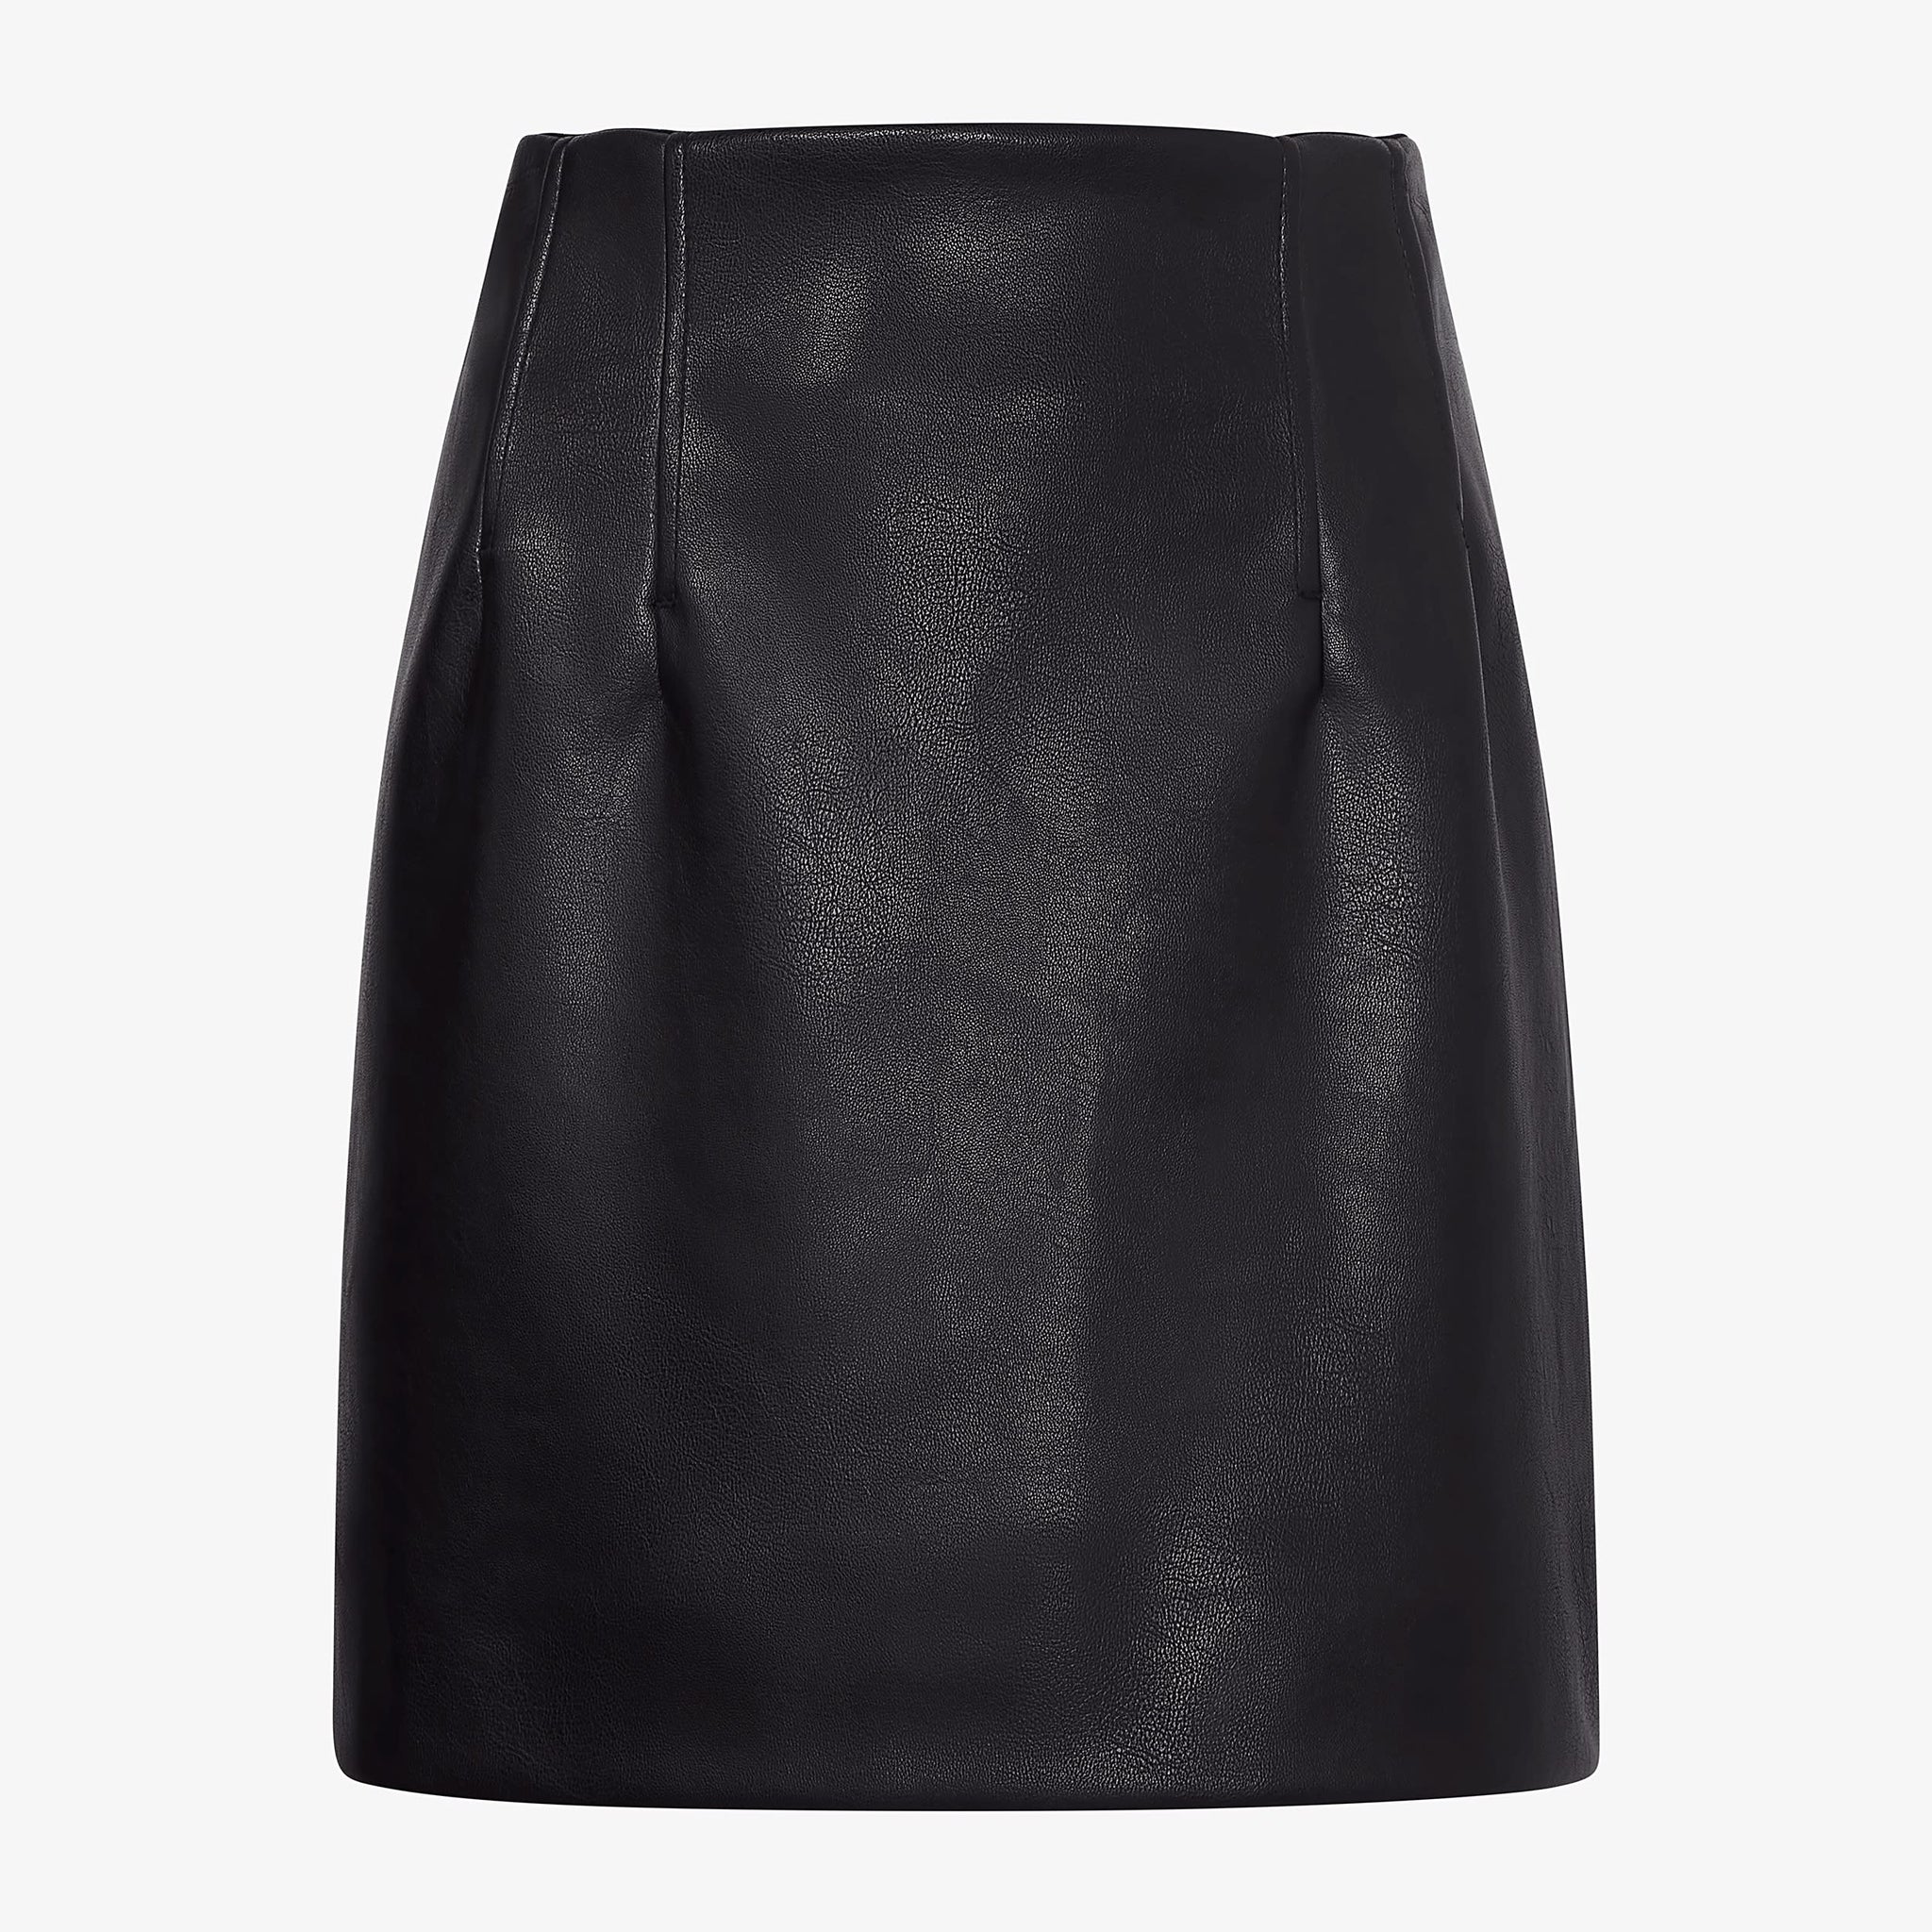 Packshot image of the Whitney Skirt—Vegan Leather in Black